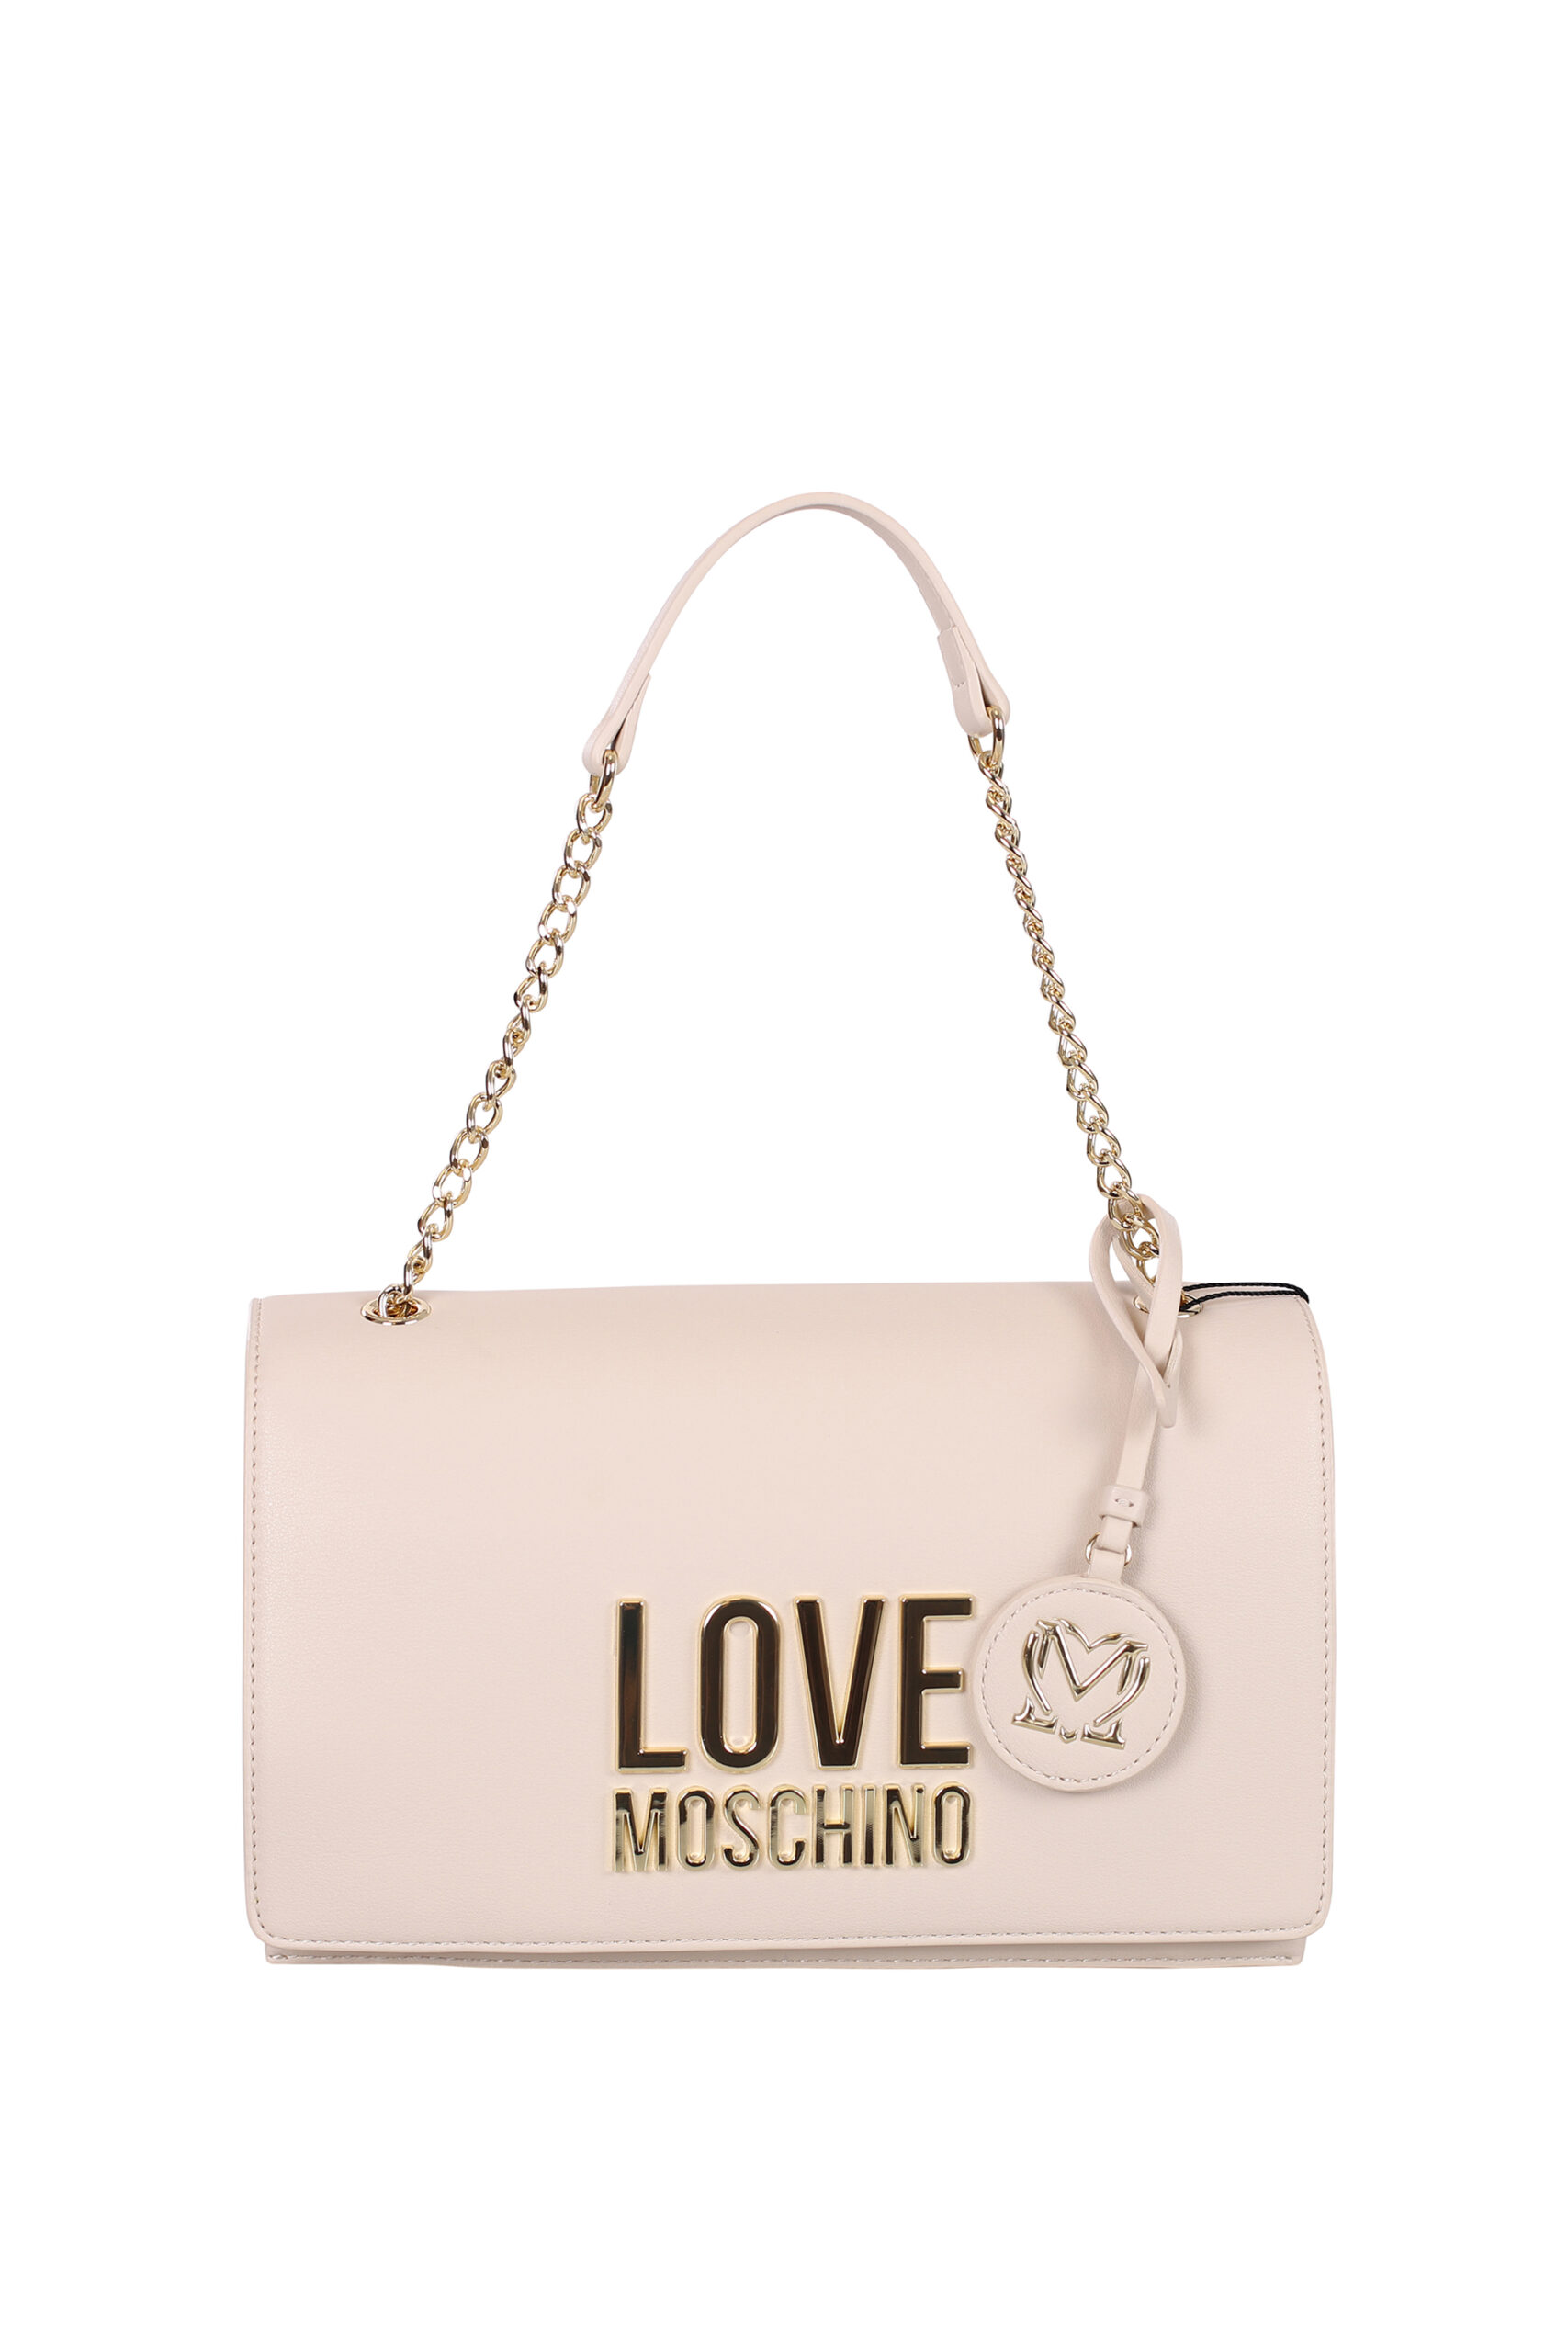 Love Moschino - Bolso bandolera beige con dorado "lettering" - Fashion